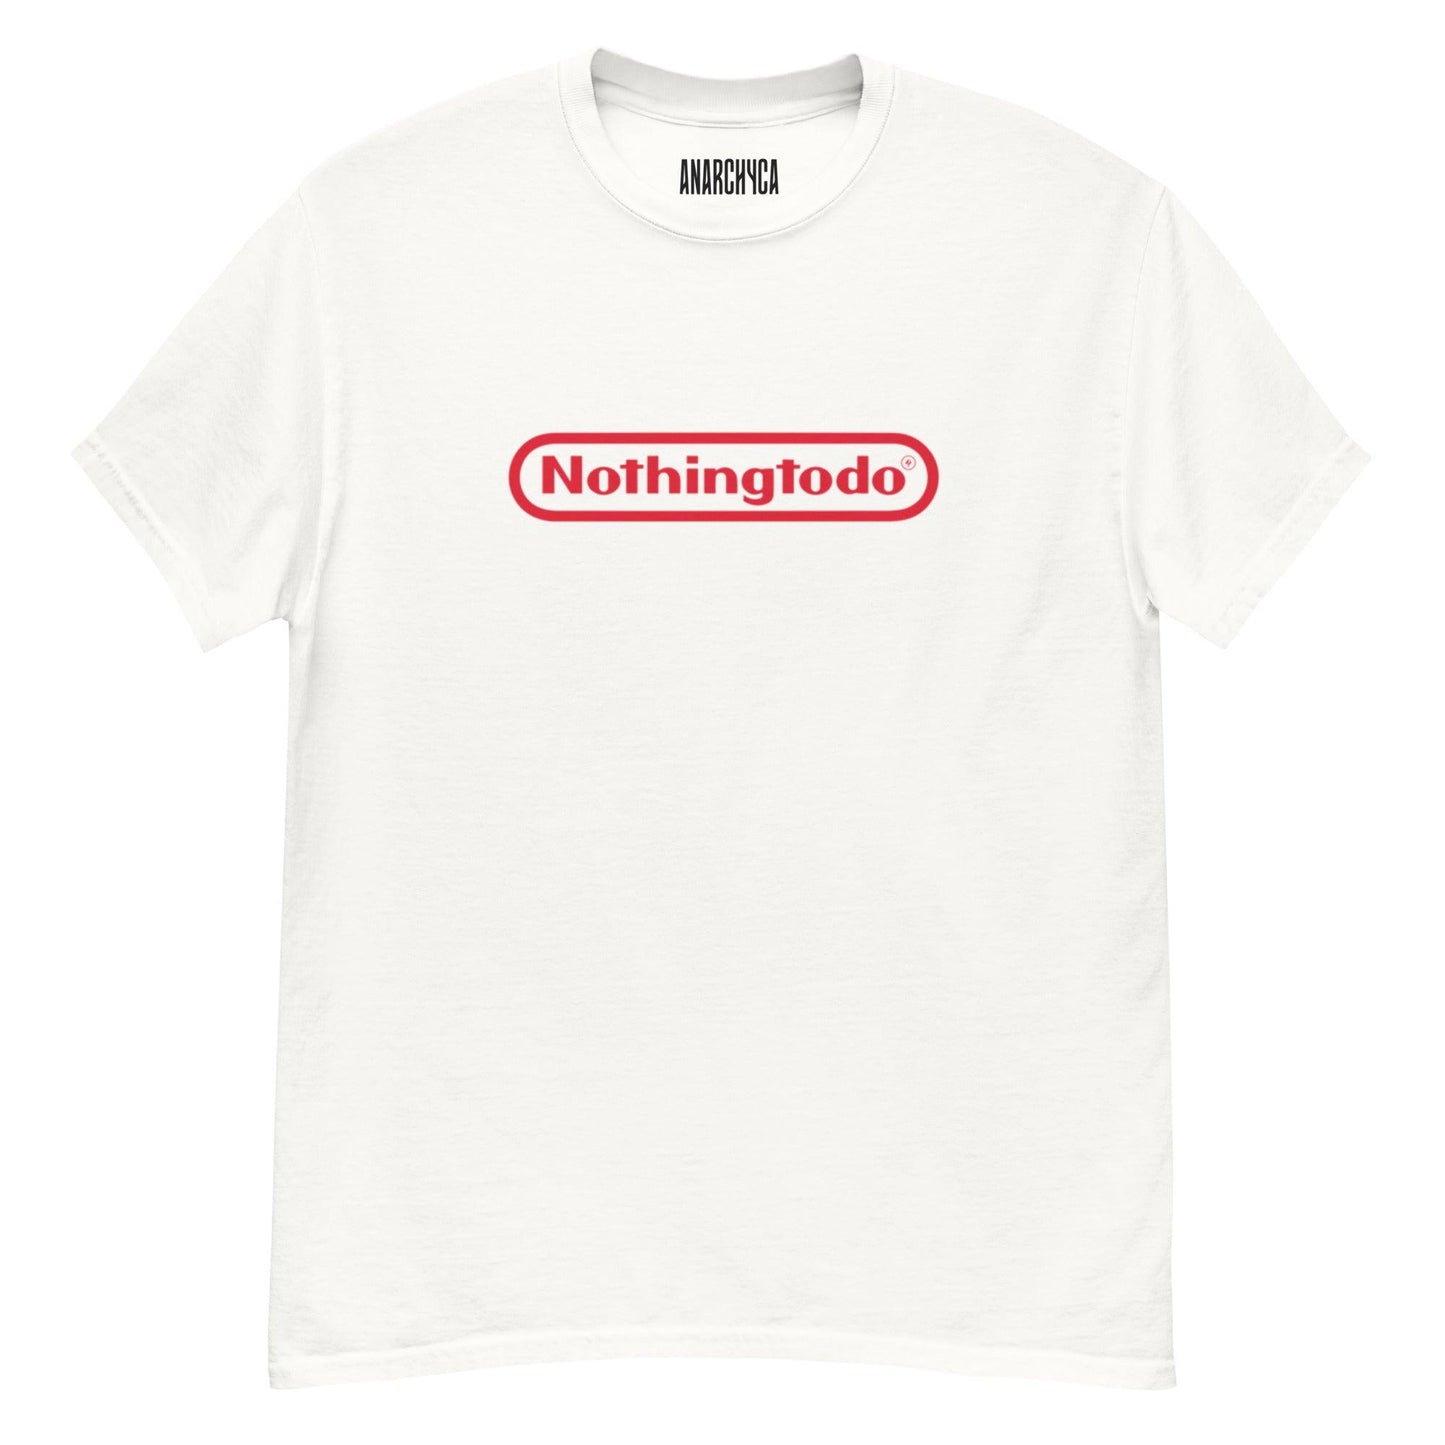 NOTHINGTODO - Anarchyca-clothing